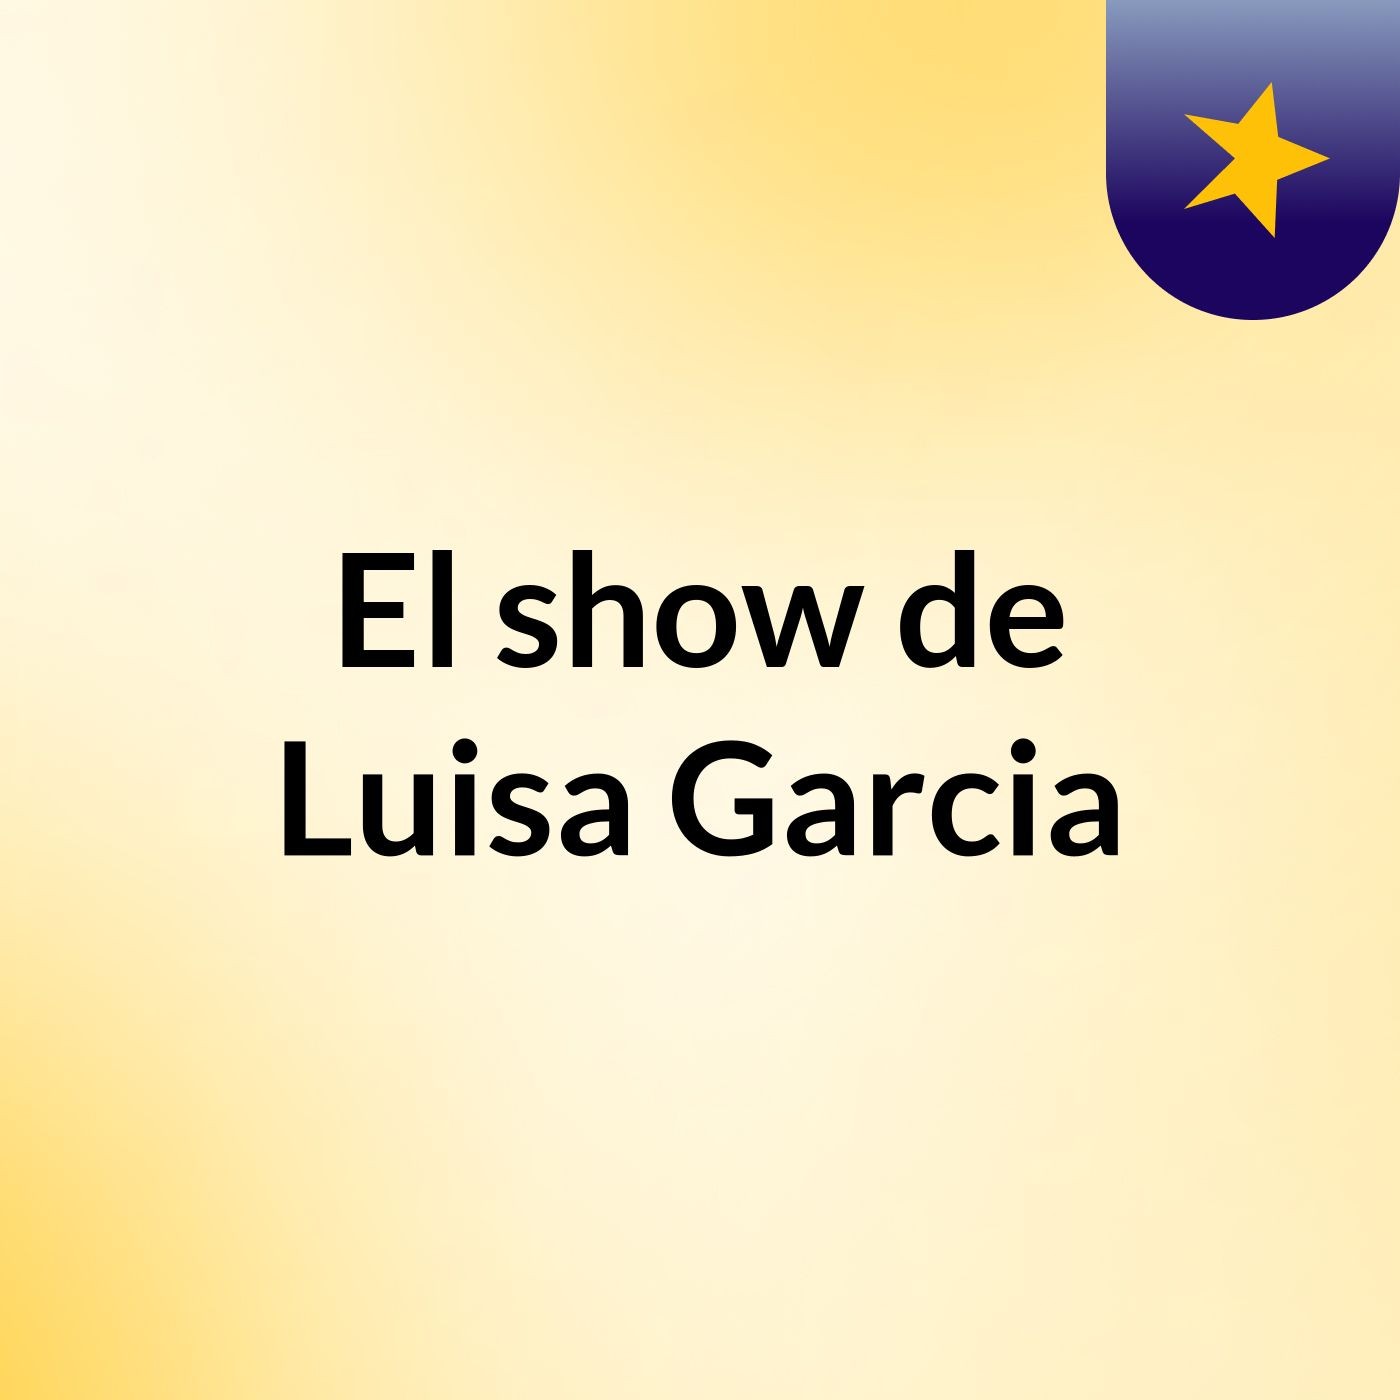 El show de Luisa Garcia